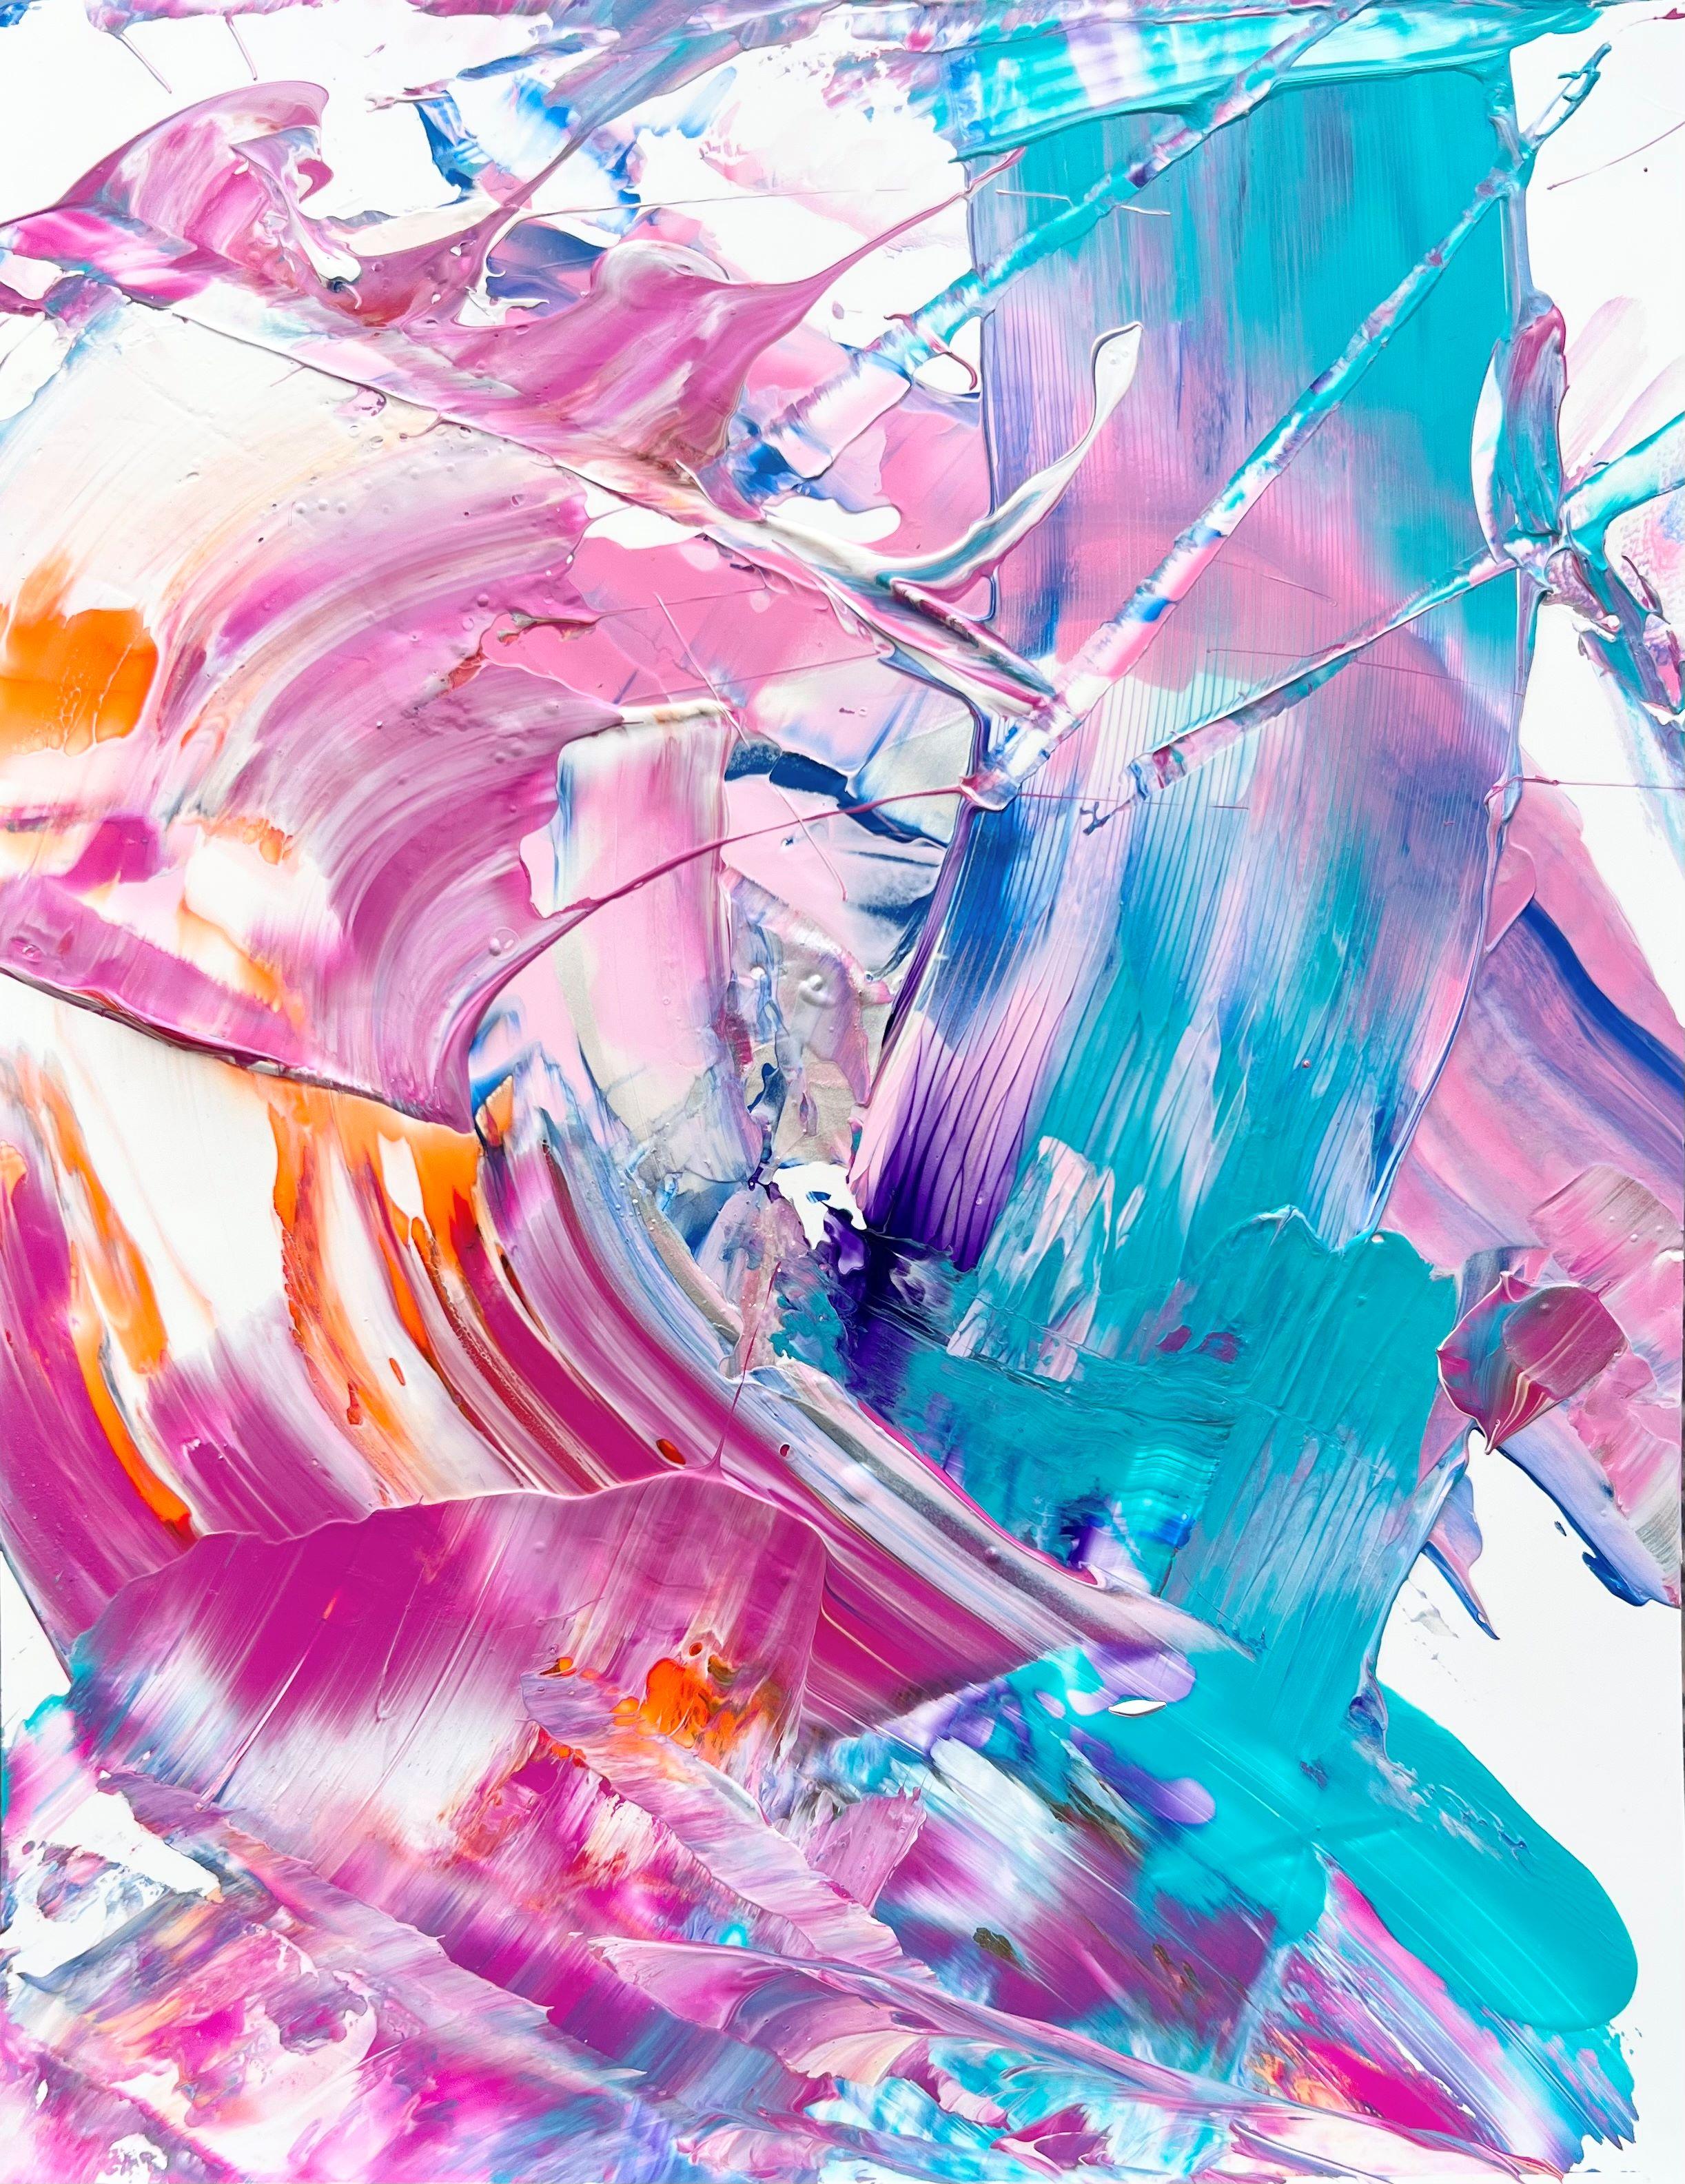 Abstract Painting Eric Wilson - Peinture abstraite et joyeuse